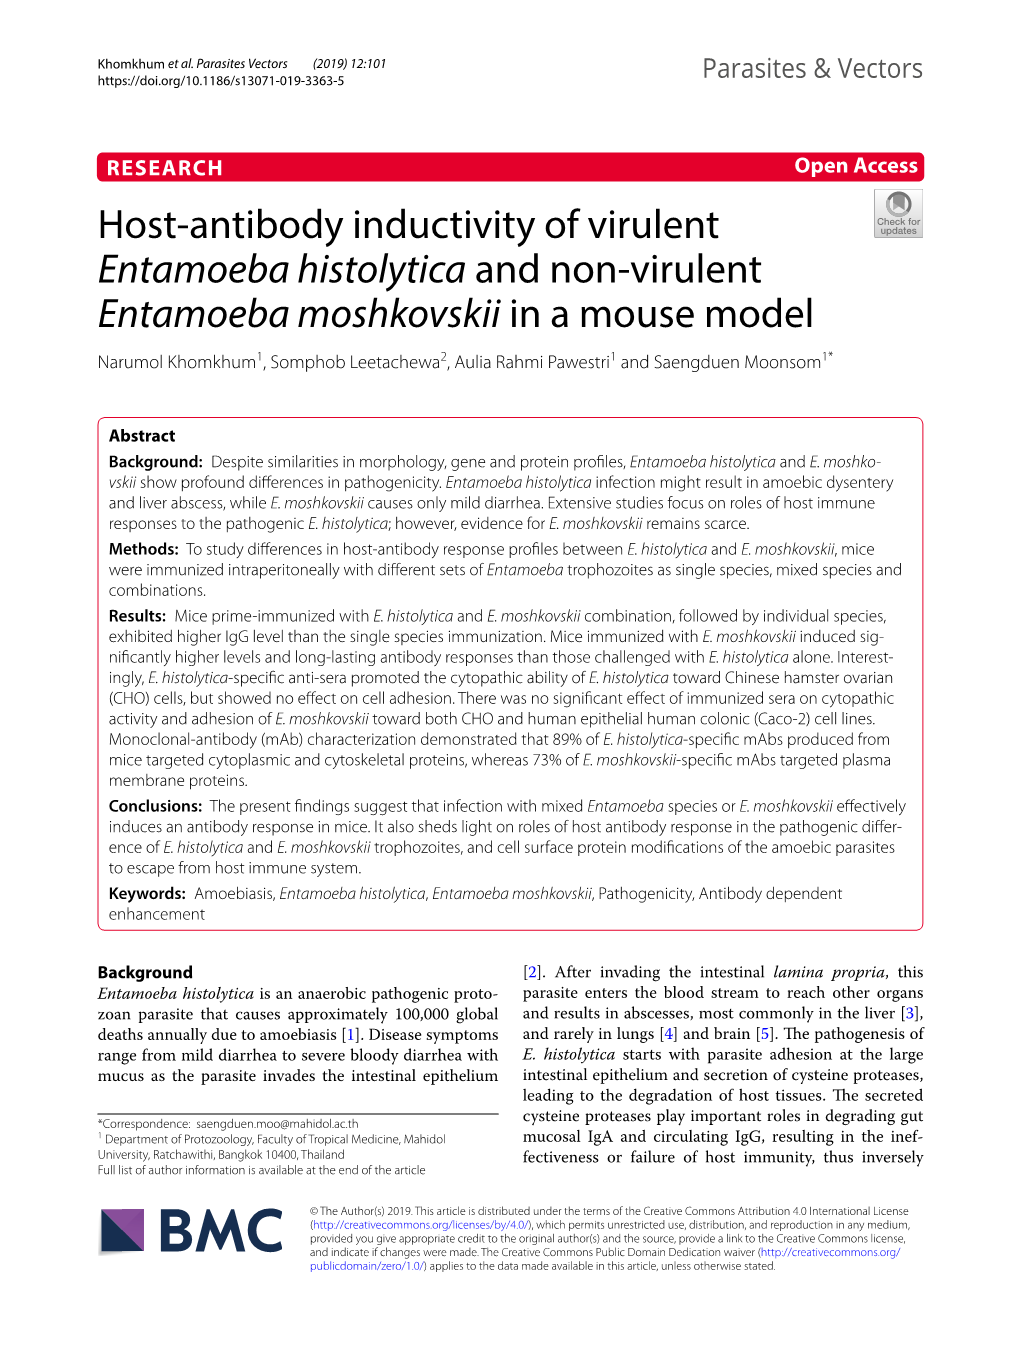 Entamoeba Histolytica and Non‑Virulent Entamoeba Moshkovskii in a Mouse Model Narumol Khomkhum1, Somphob Leetachewa2, Aulia Rahmi Pawestri1 and Saengduen Moonsom1*